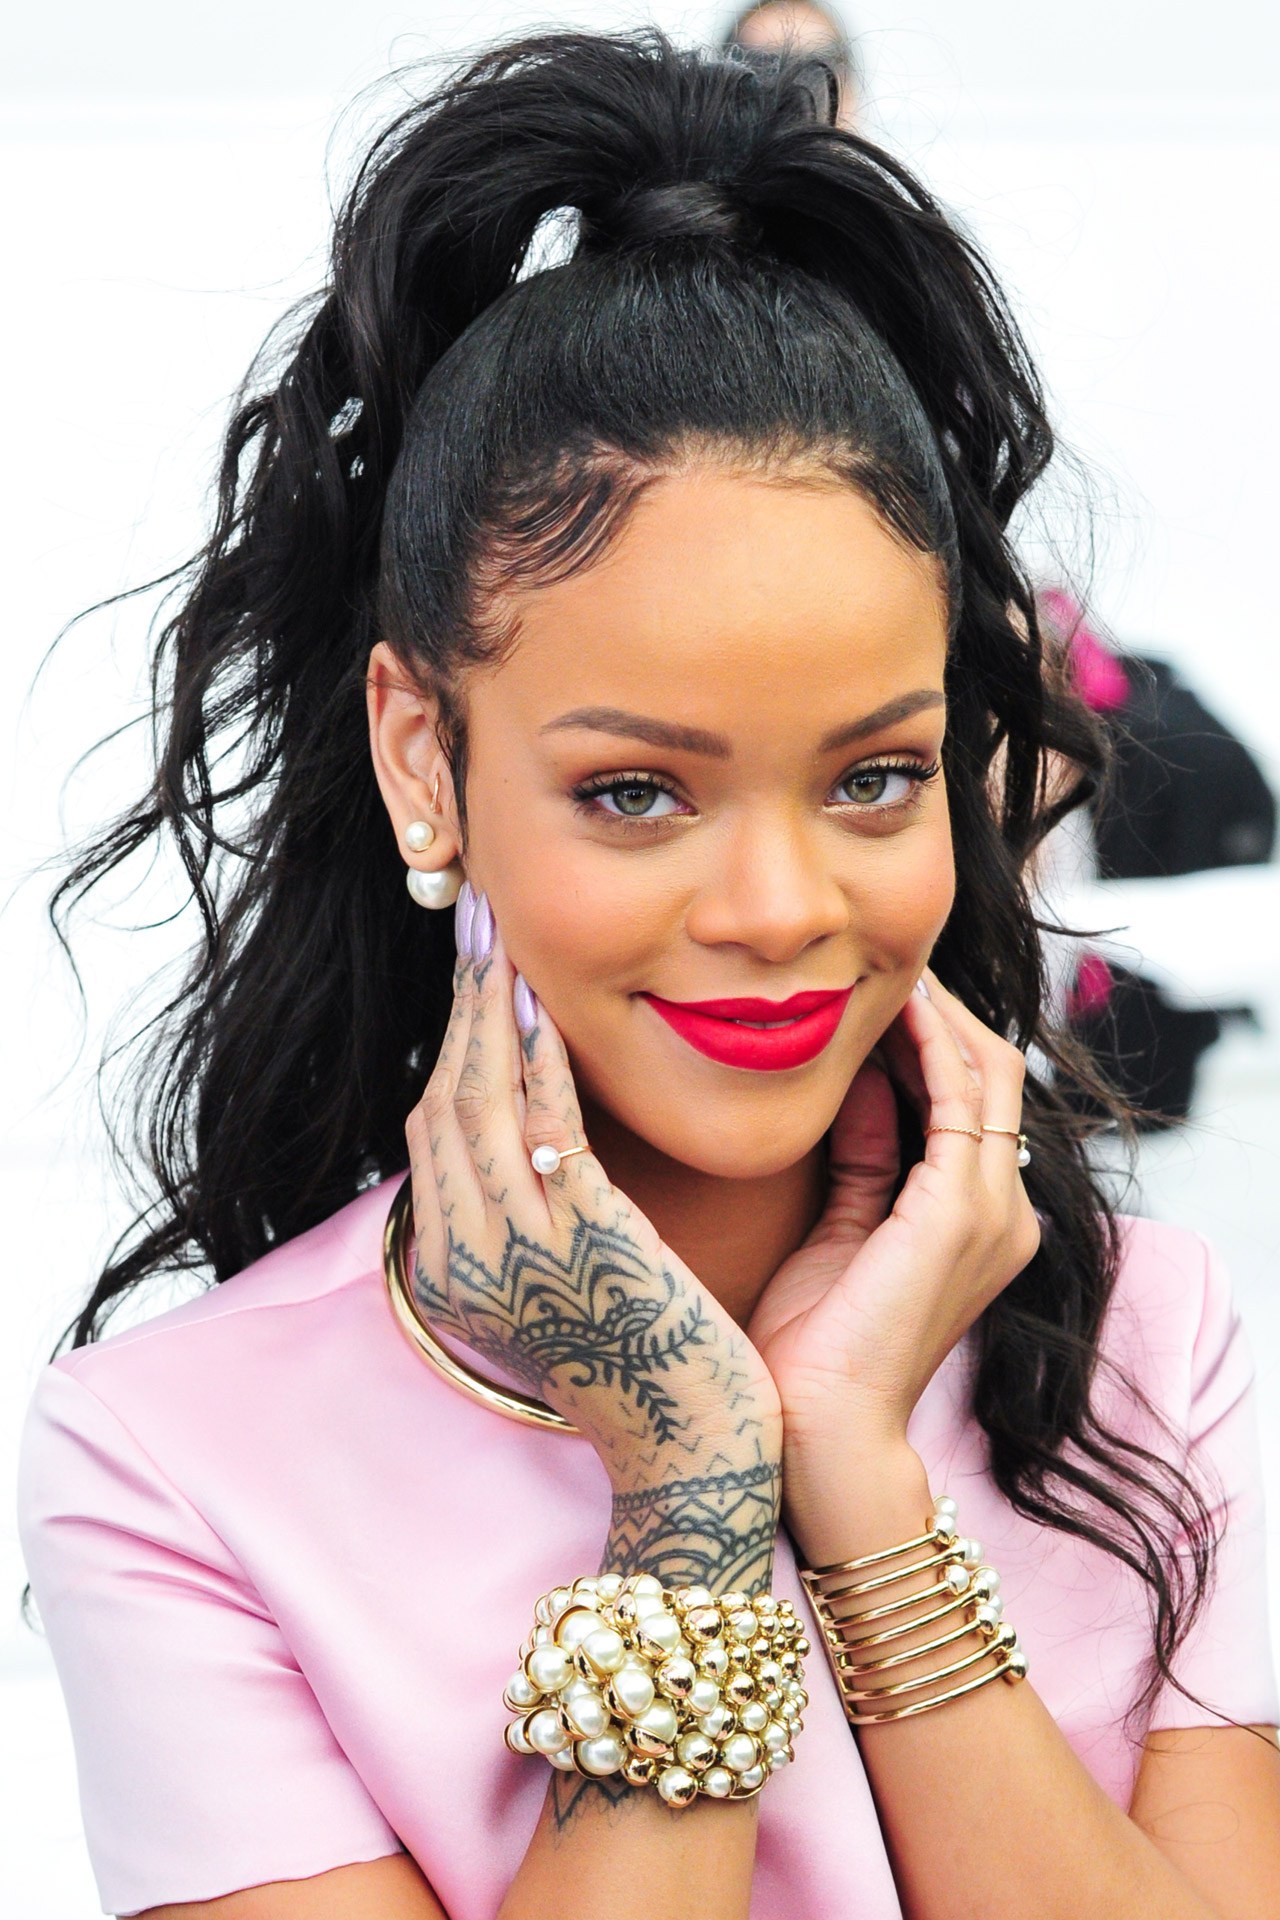 Rihanna Backgrounds, Compatible - PC, Mobile, Gadgets| 1280x1920 px